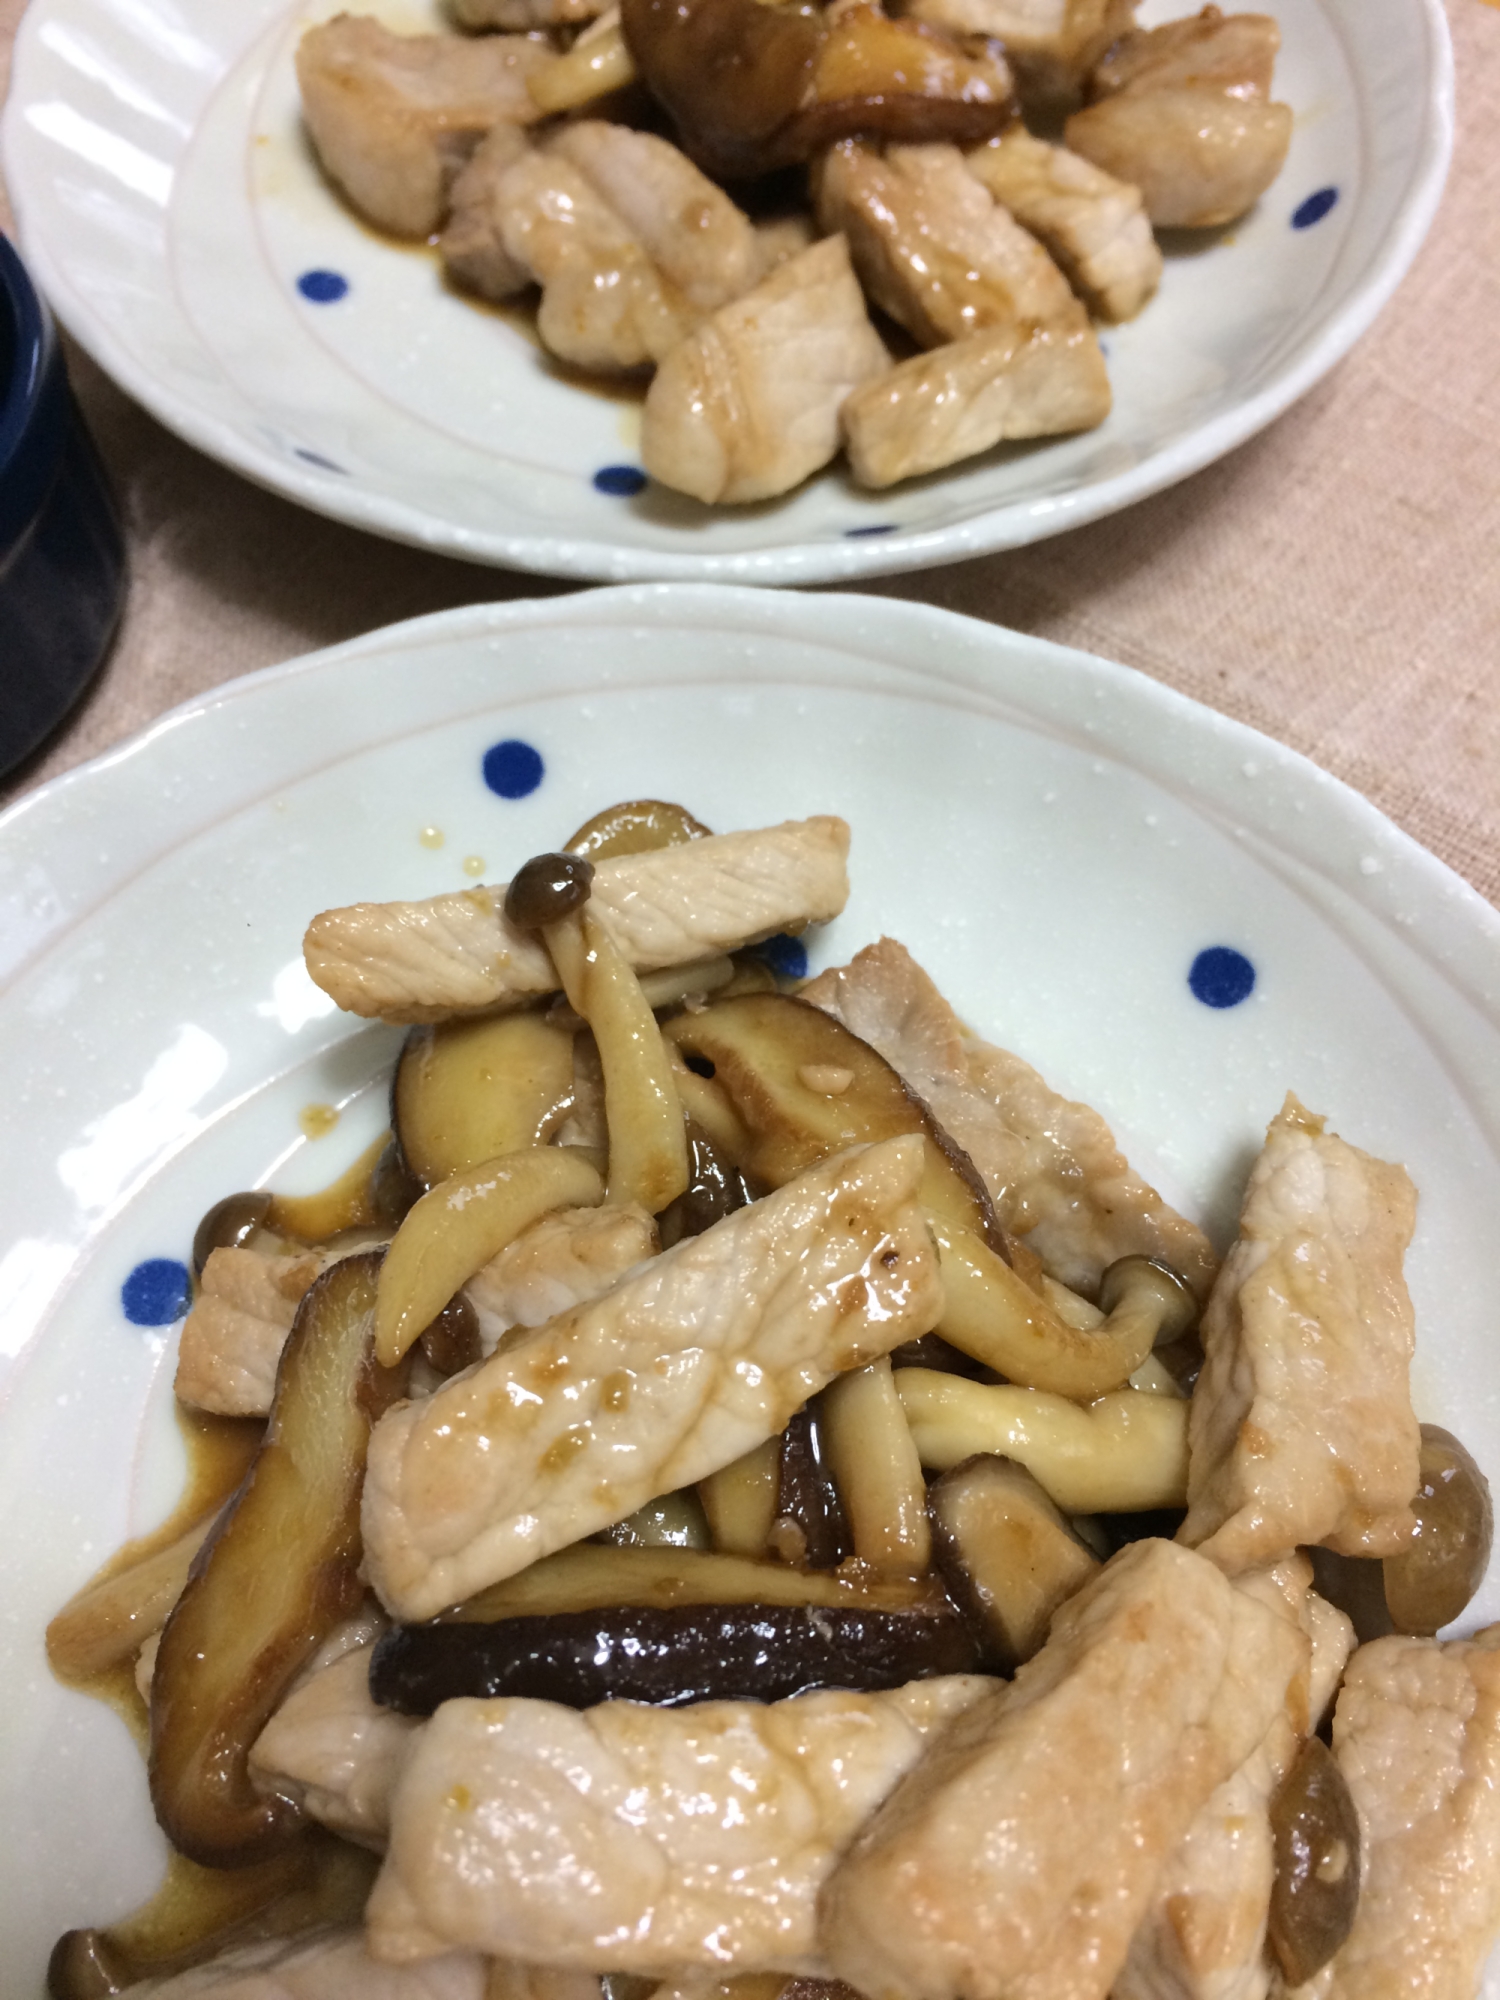 豚カツ肉と椎茸シメジの柚子胡椒炒め